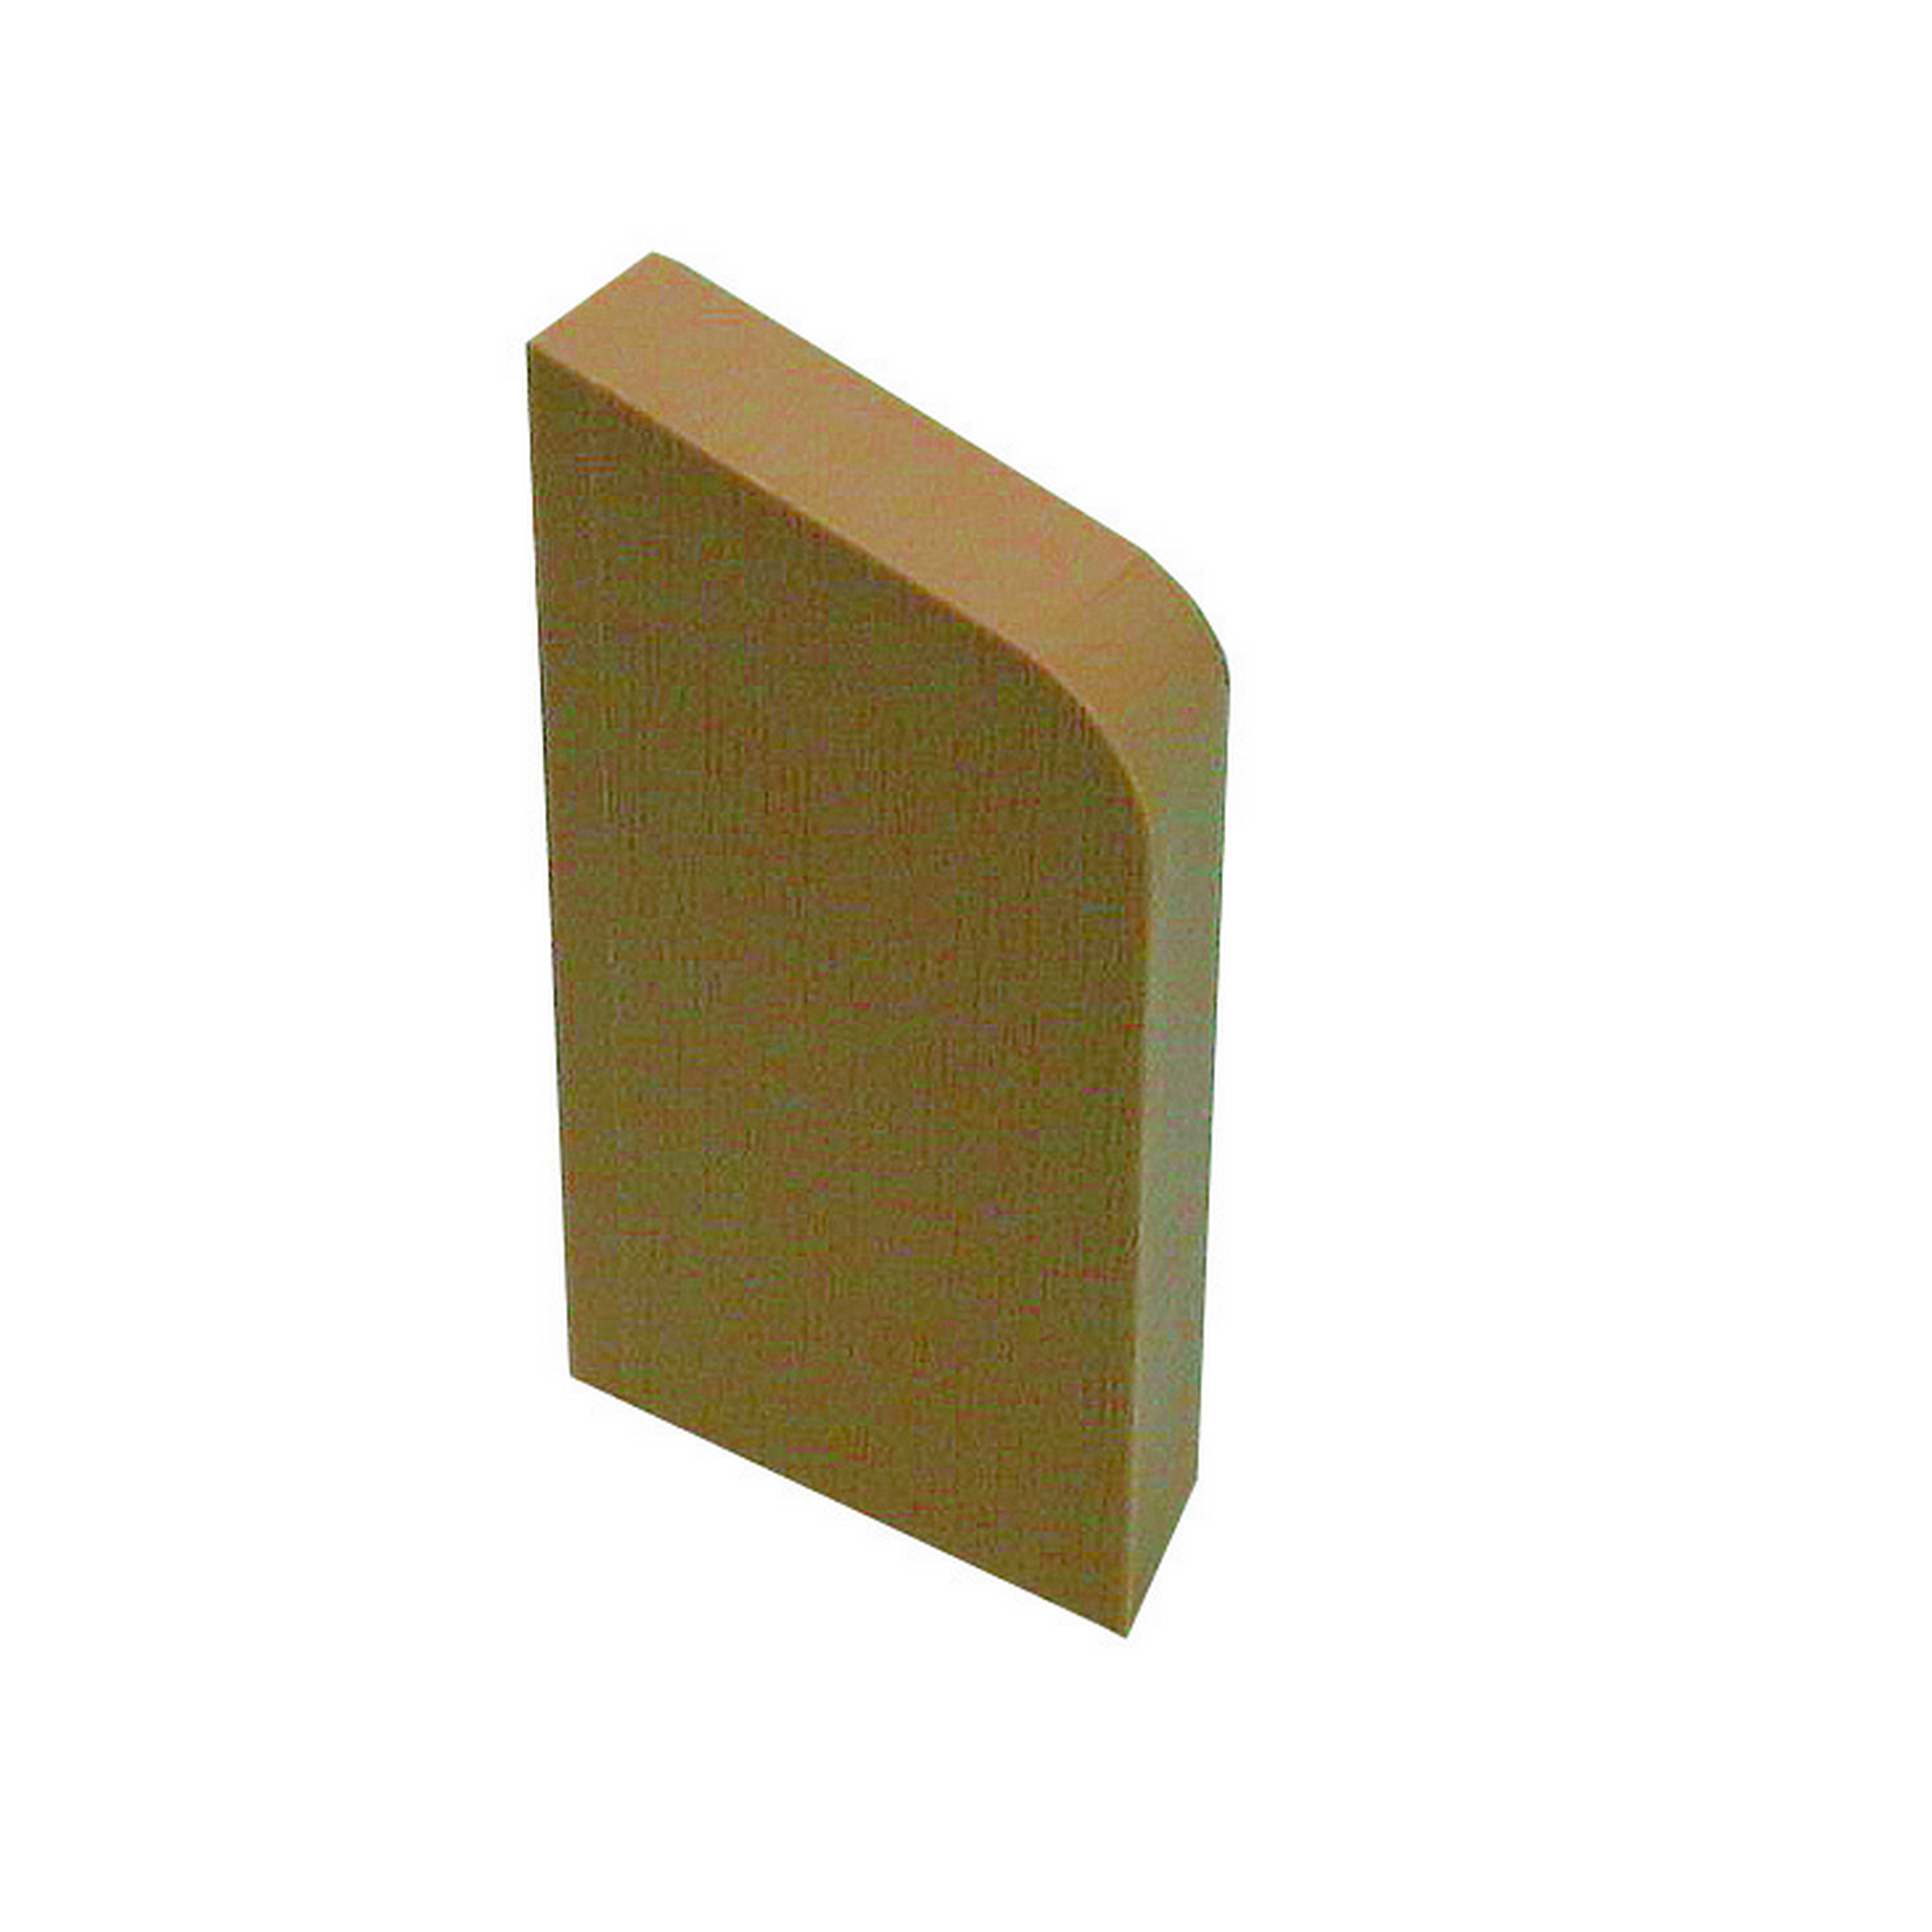 Sockelleistenendstück 'Wiroflex' Kunststoff Buche rechts 8,6 x 4,5 x 1 cm + product picture